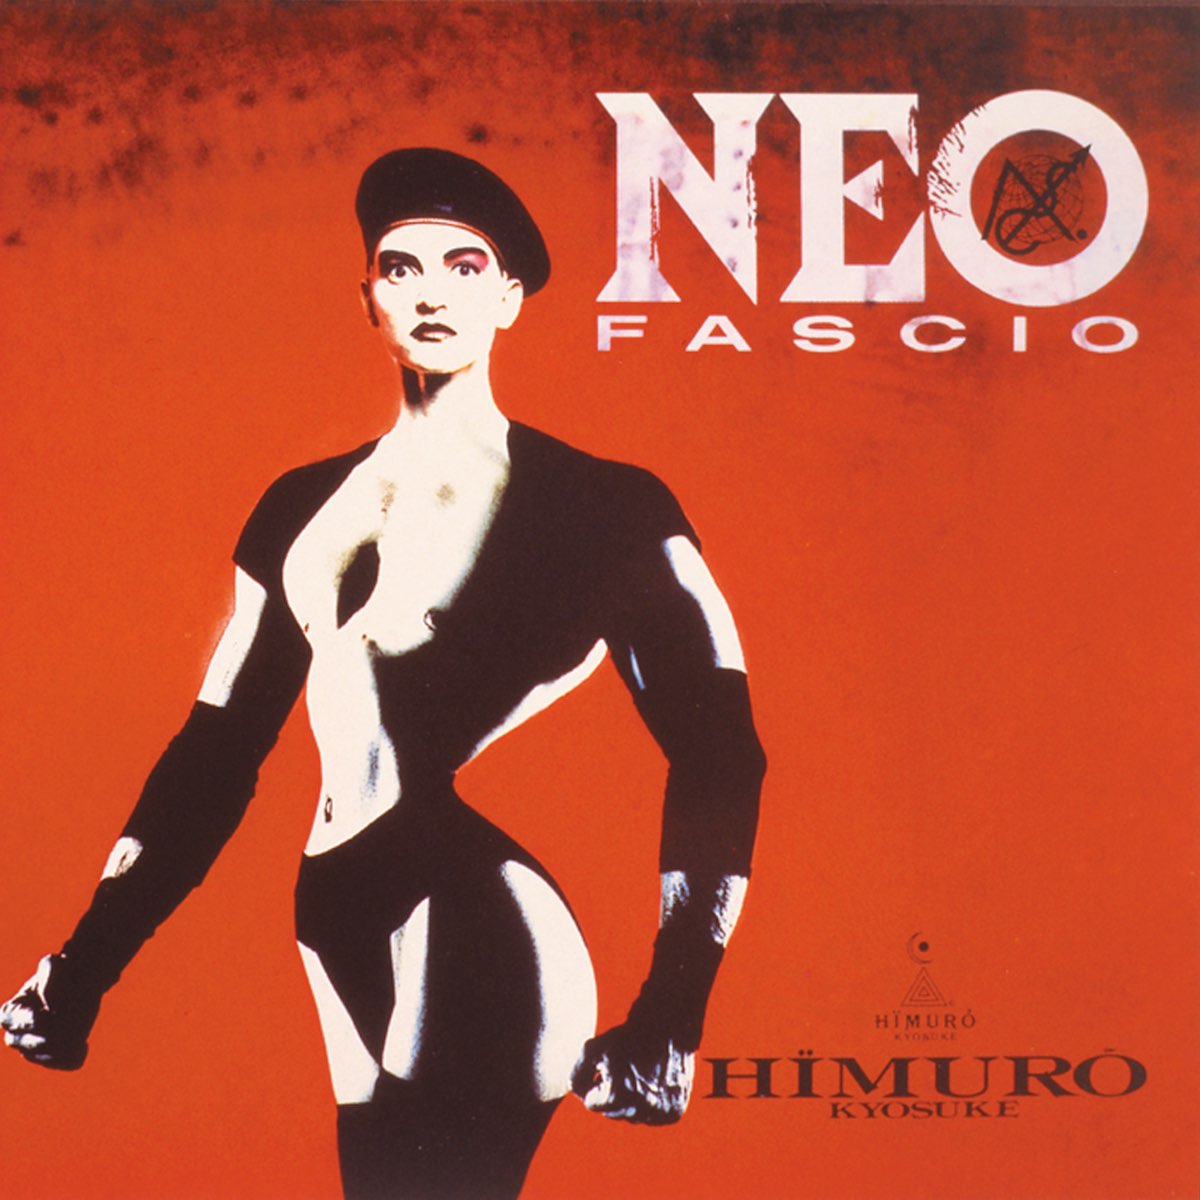 NEO FASCIO - 氷室京介のアルバム - Apple Music